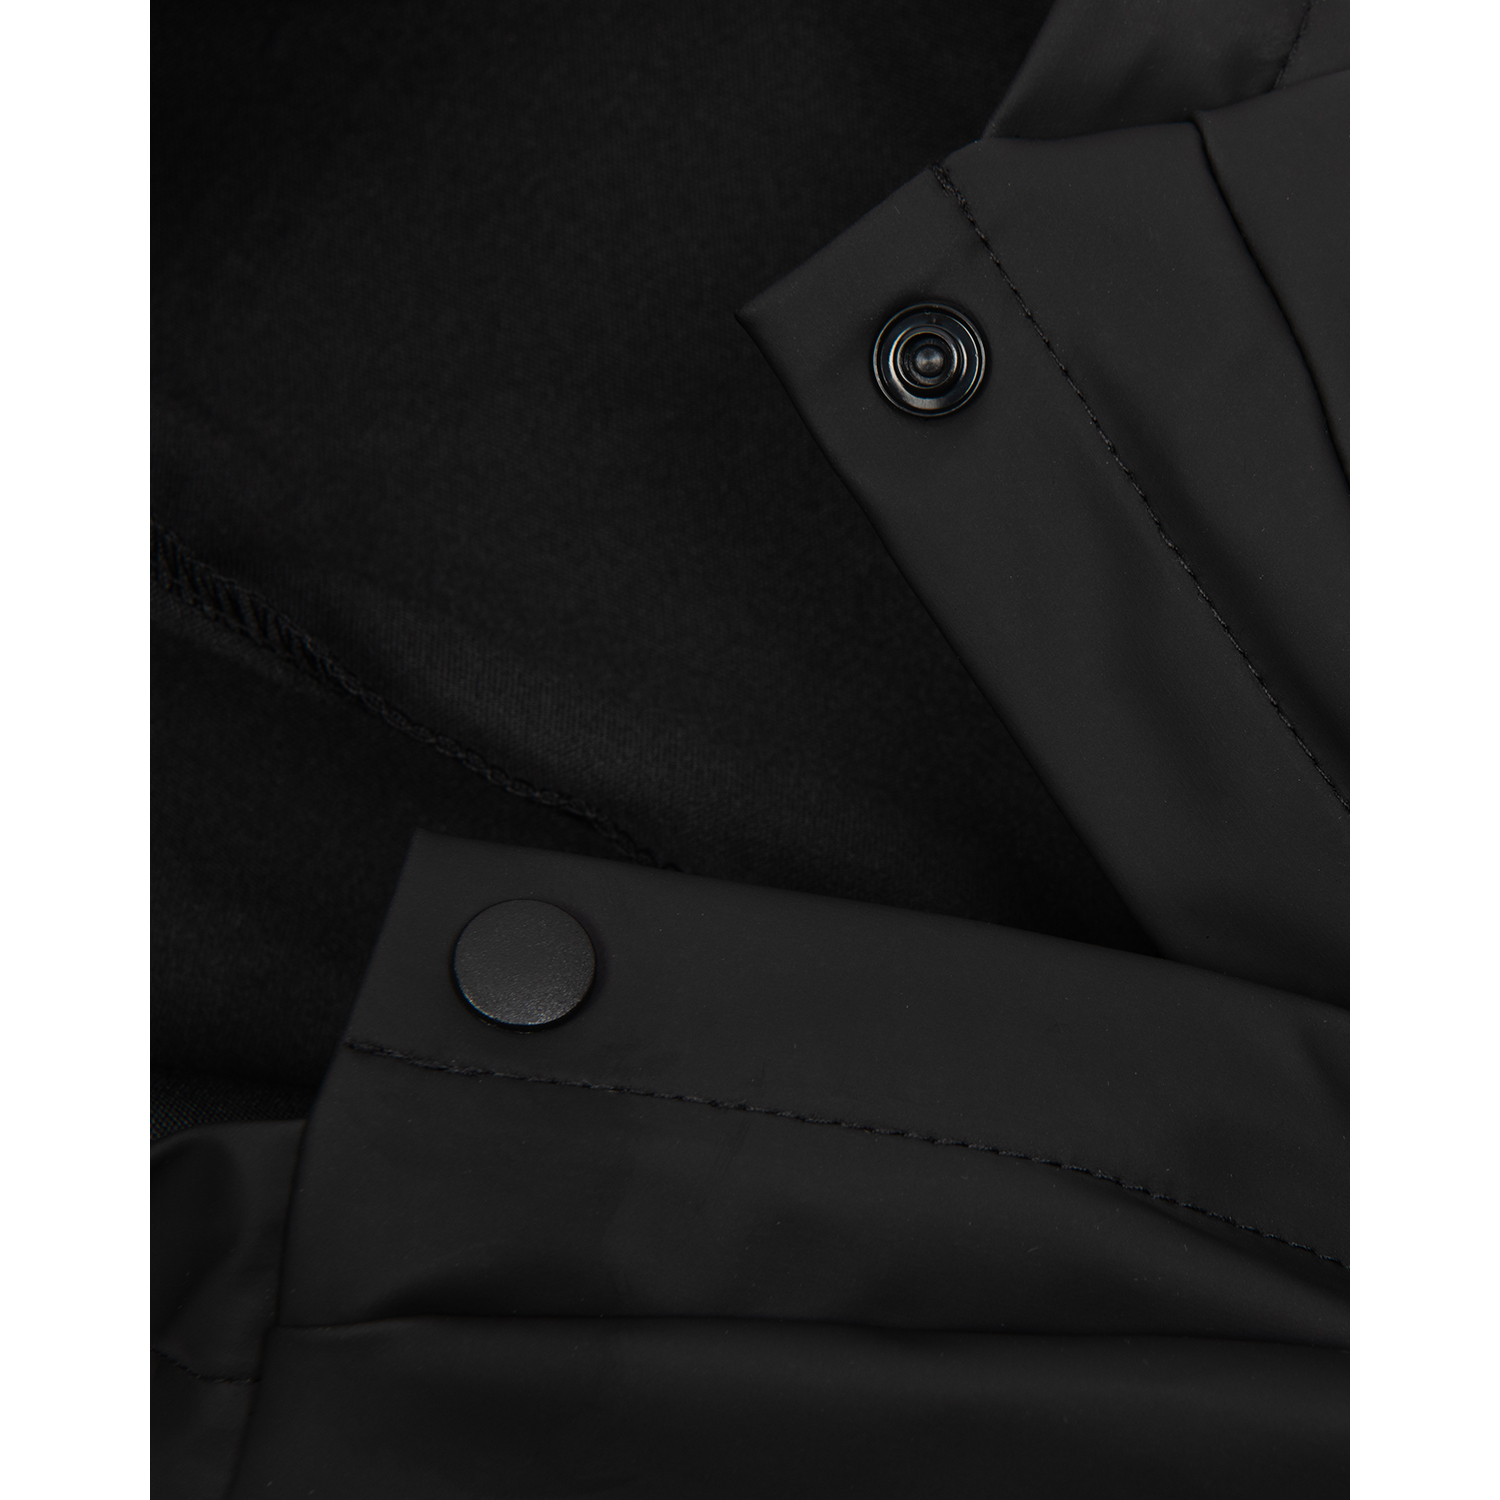 Дождевик-куртка для собак Zoozavr чёрный 35 - фото 3